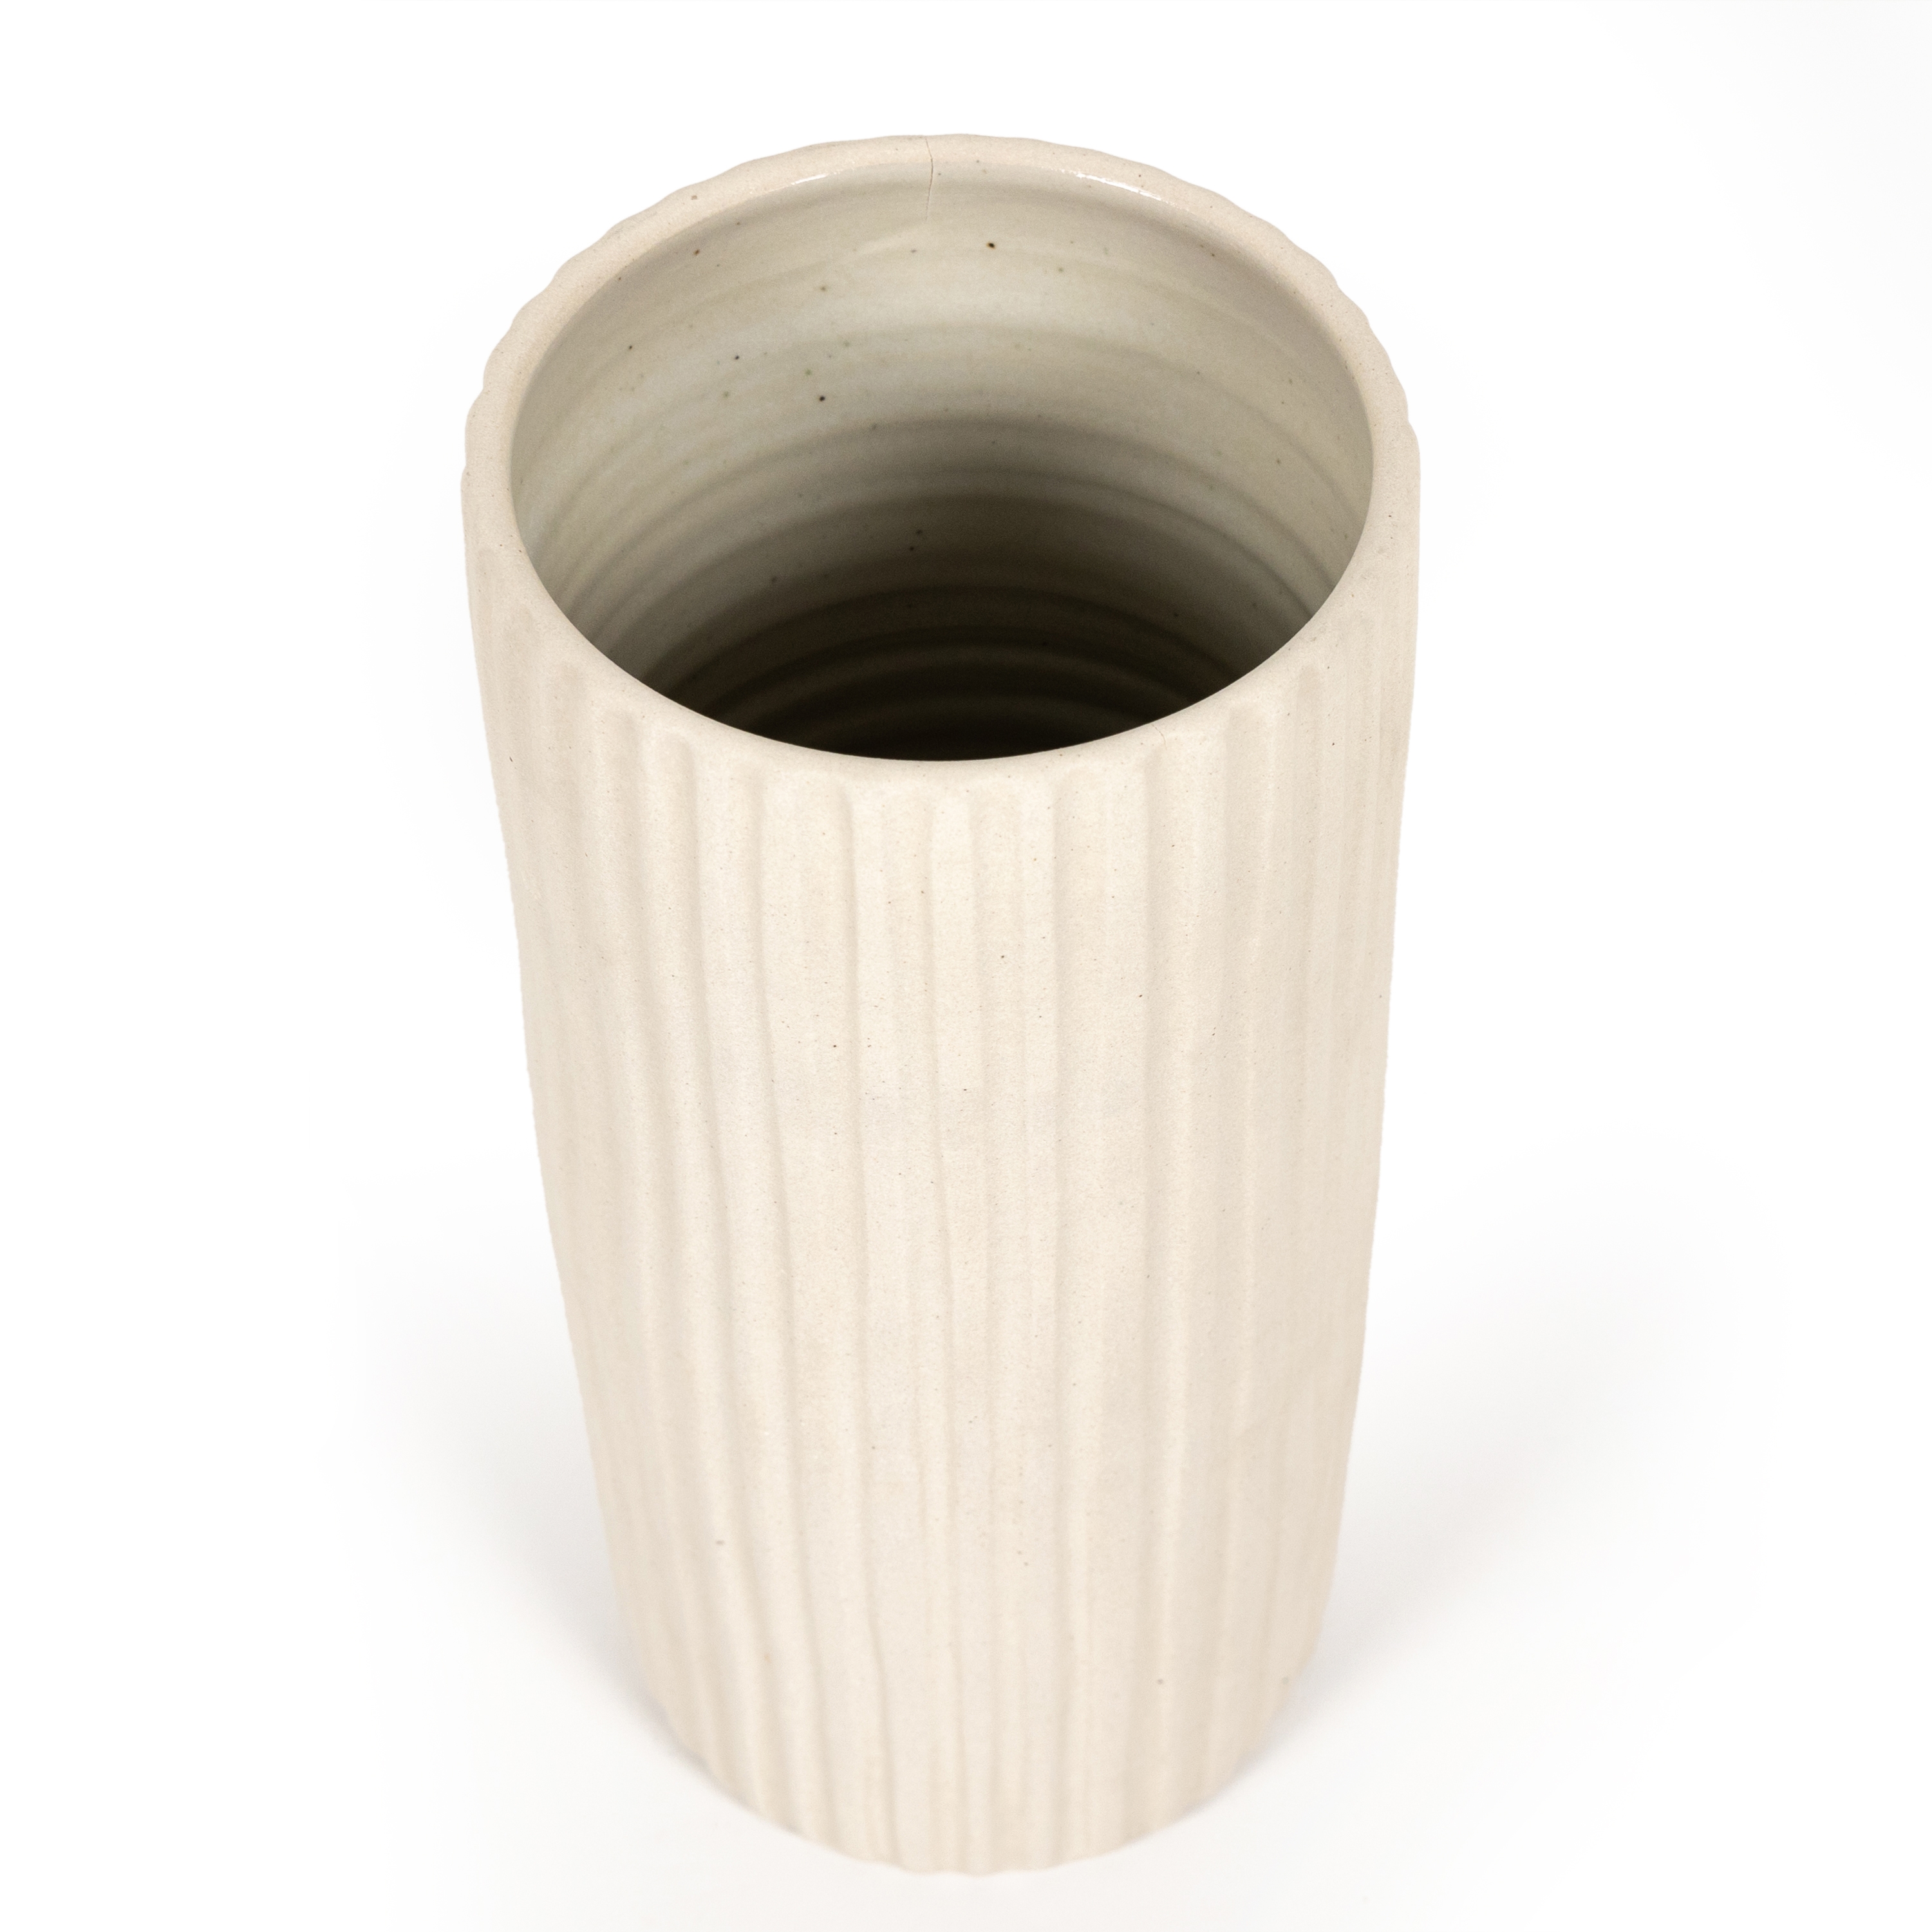 Julio Tall Vase-Cream Matte Ceramic - Image 4